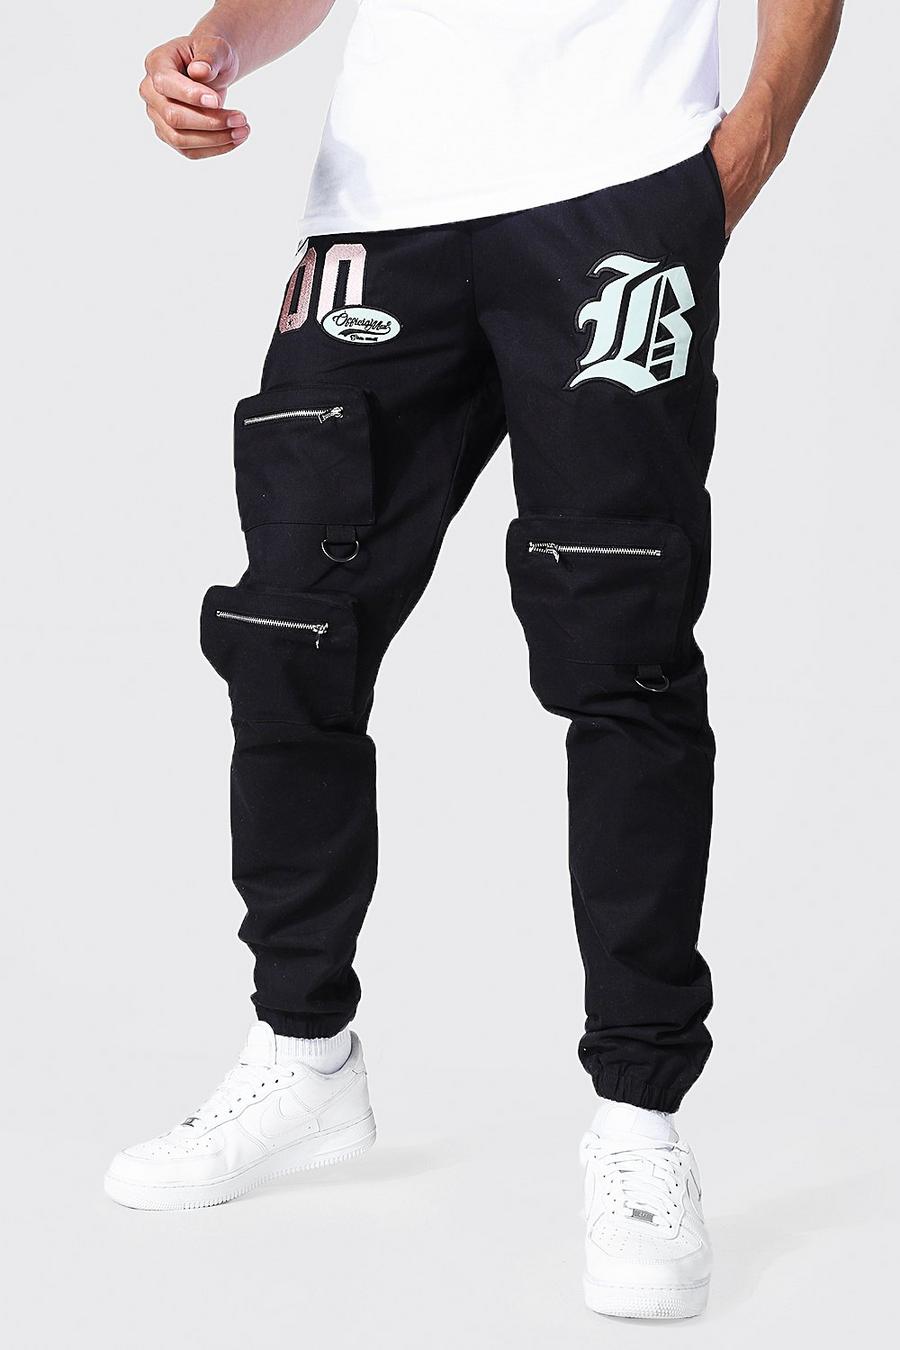 Pantaloni tuta Cargo Tall stile Varsity con tasche frontali, Black